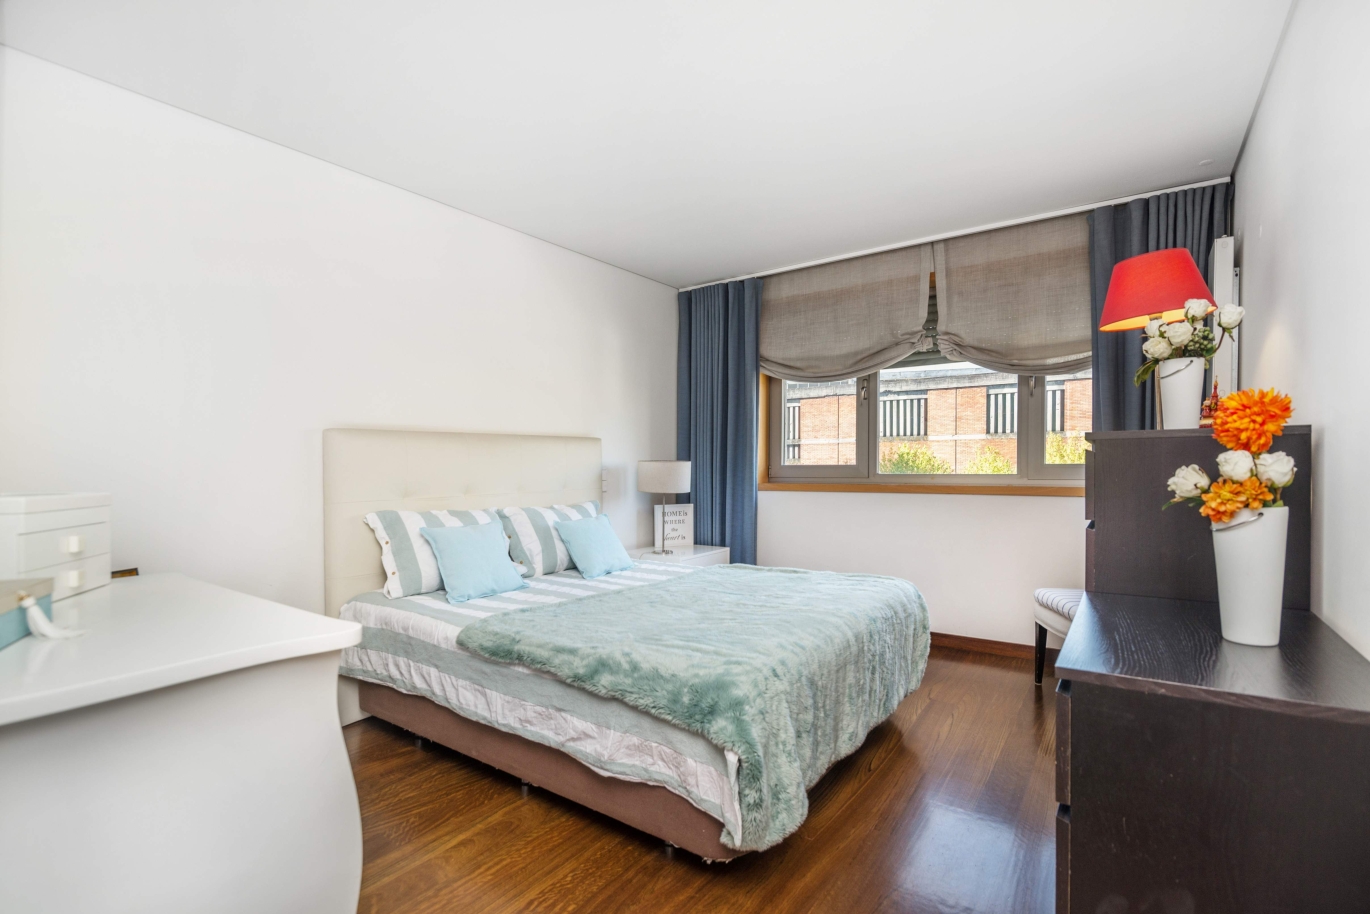 Sale apartment in private condominium w/ river views, Porto, Portugal_121038